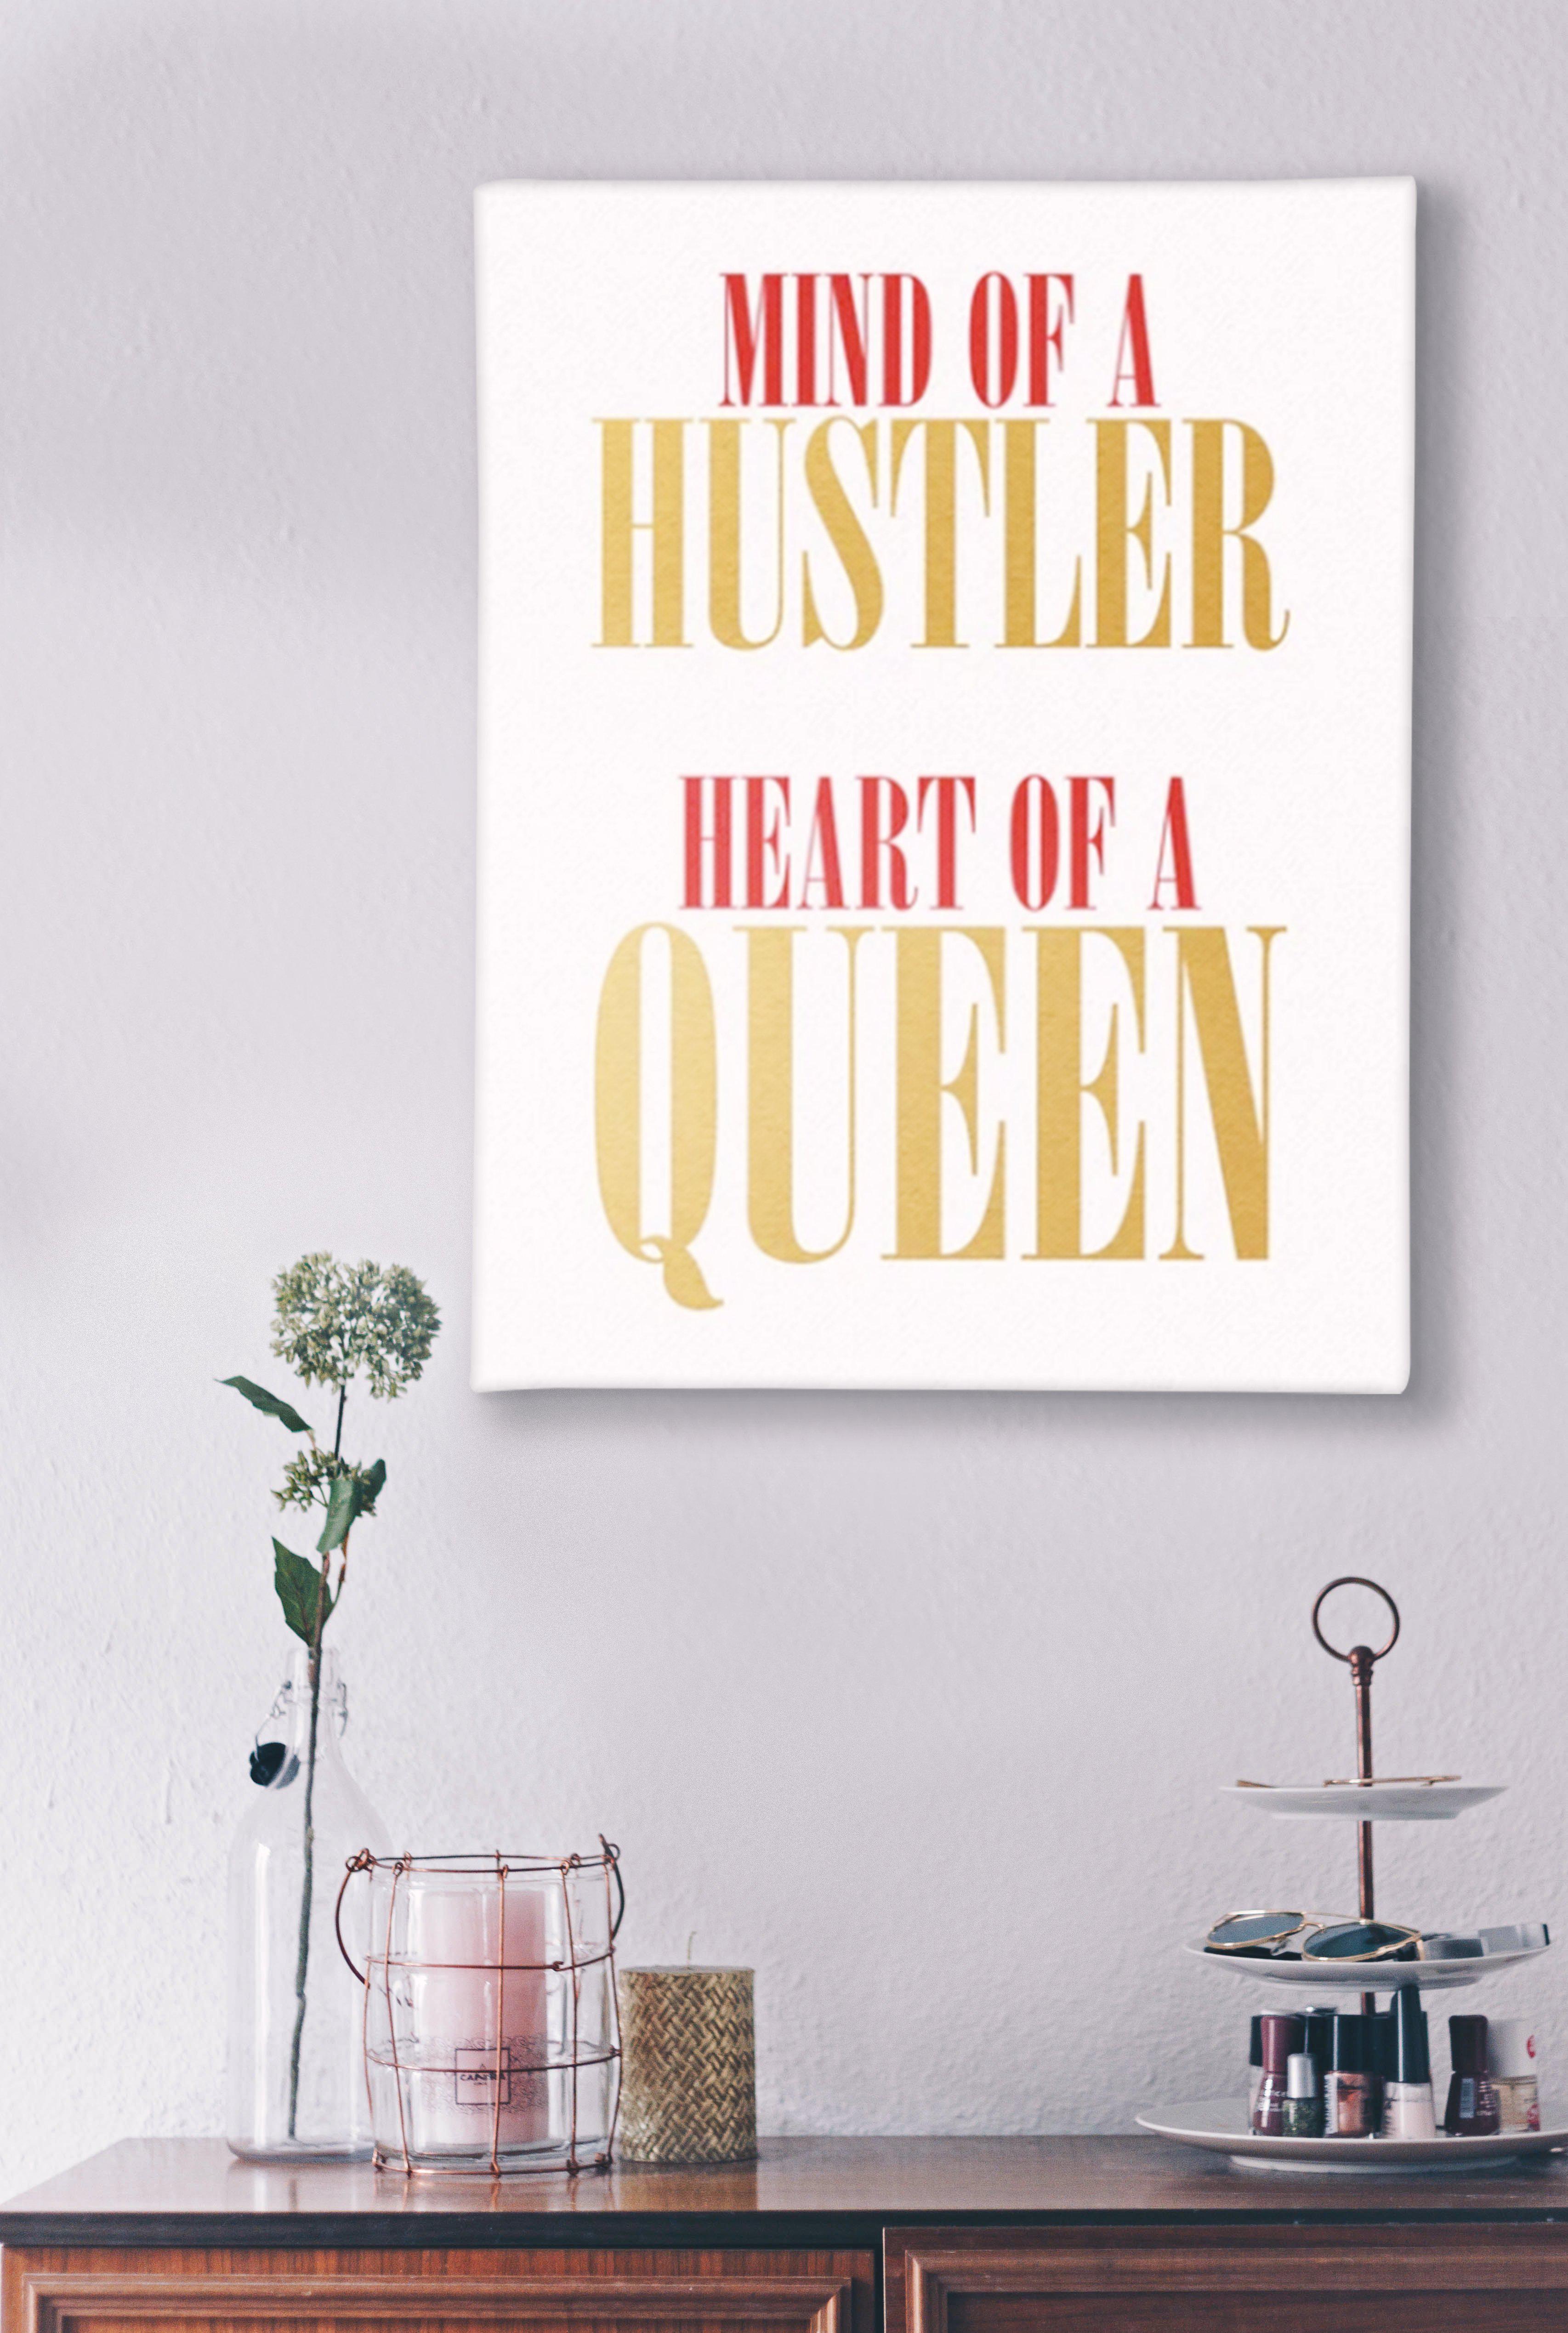 "Heart of a Queen" Canvas Print-money_motivation_brand